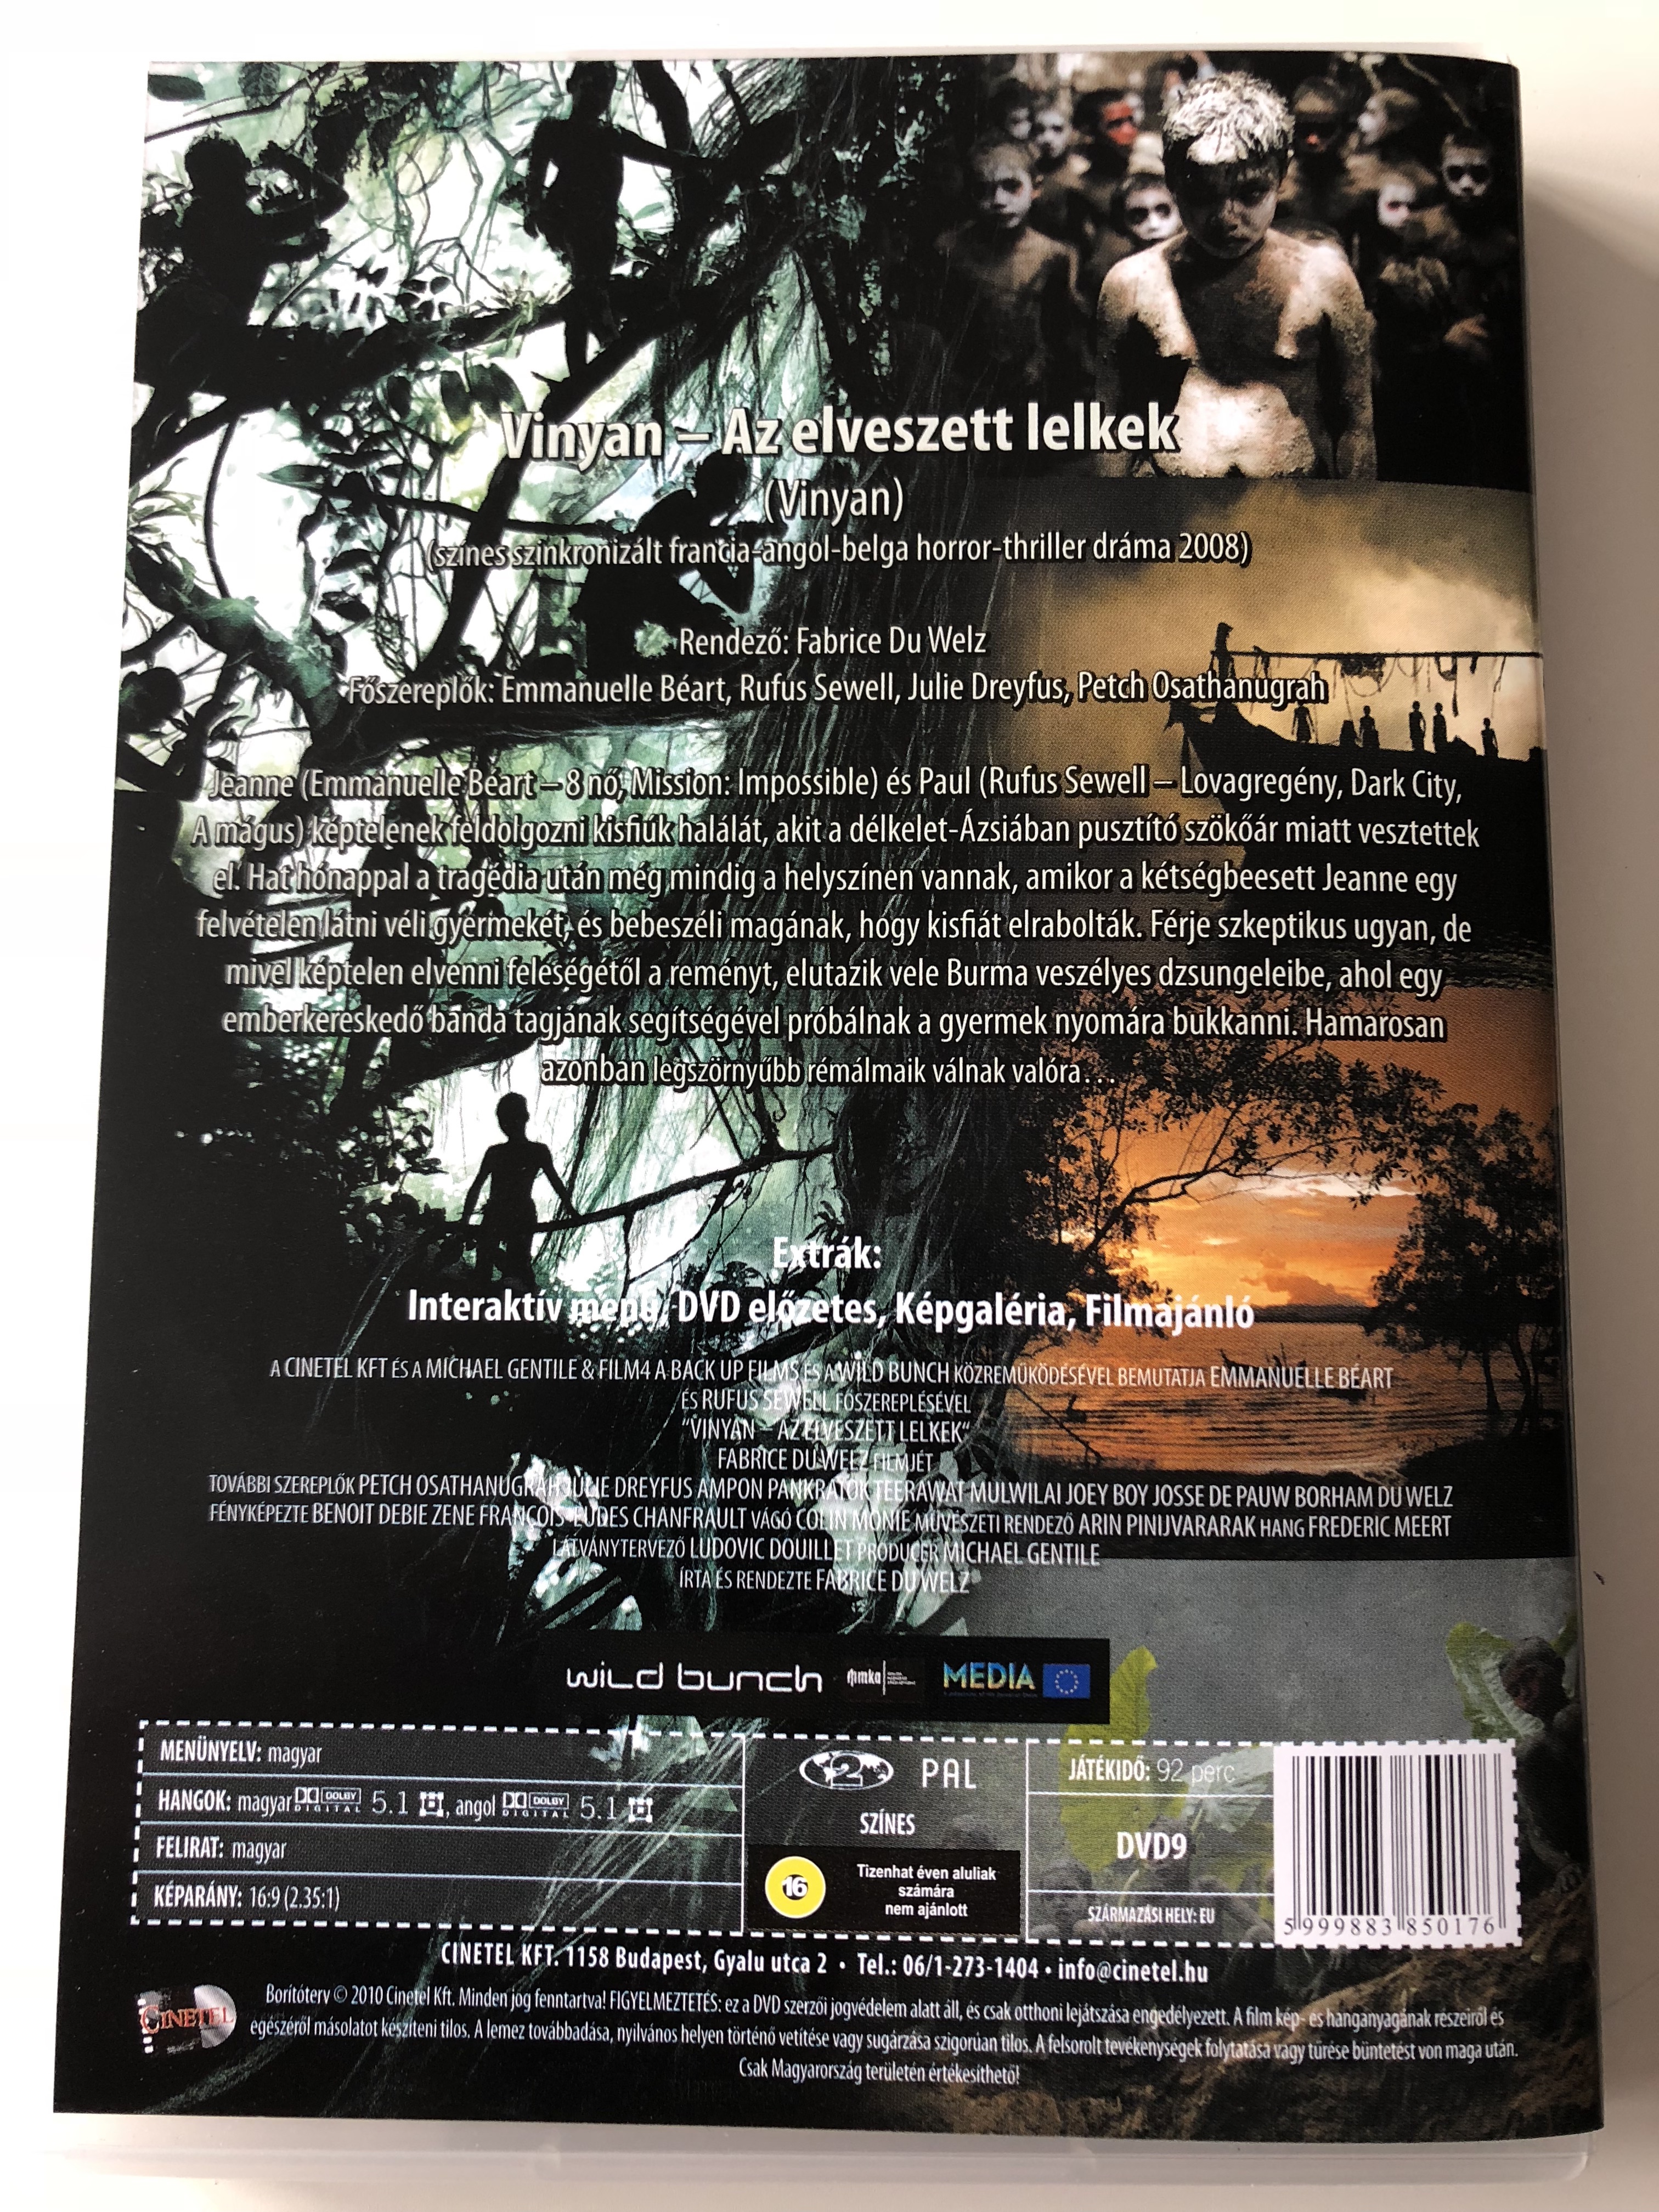 Vinyan - Az elveszett lelkek 2009 DVD / Directed by Fabrice du Welz /  Starring: Emmanuelle Béart, Rufus Sewell, Julie Dreyfus - Bible in My  Language